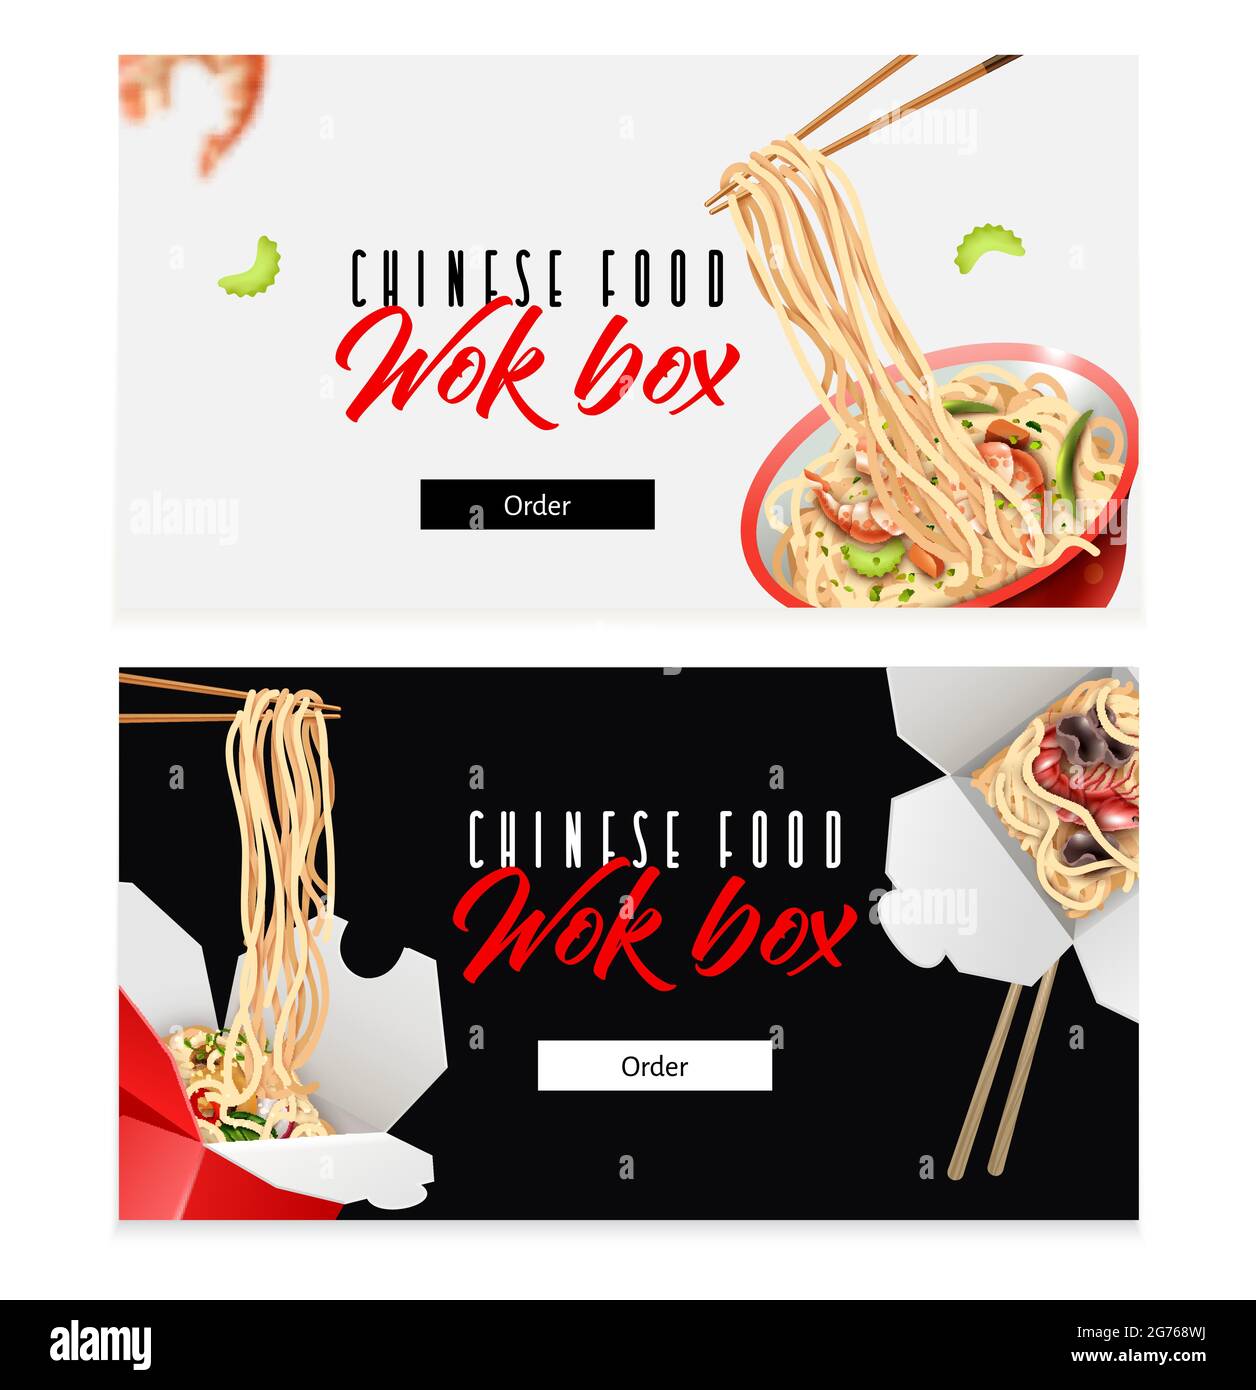 Cinese tagliatelle asian wok box food 2 realistico orizzontale bianco nero  sfondo pubblicità web banner illustrazione Immagine e Vettoriale - Alamy